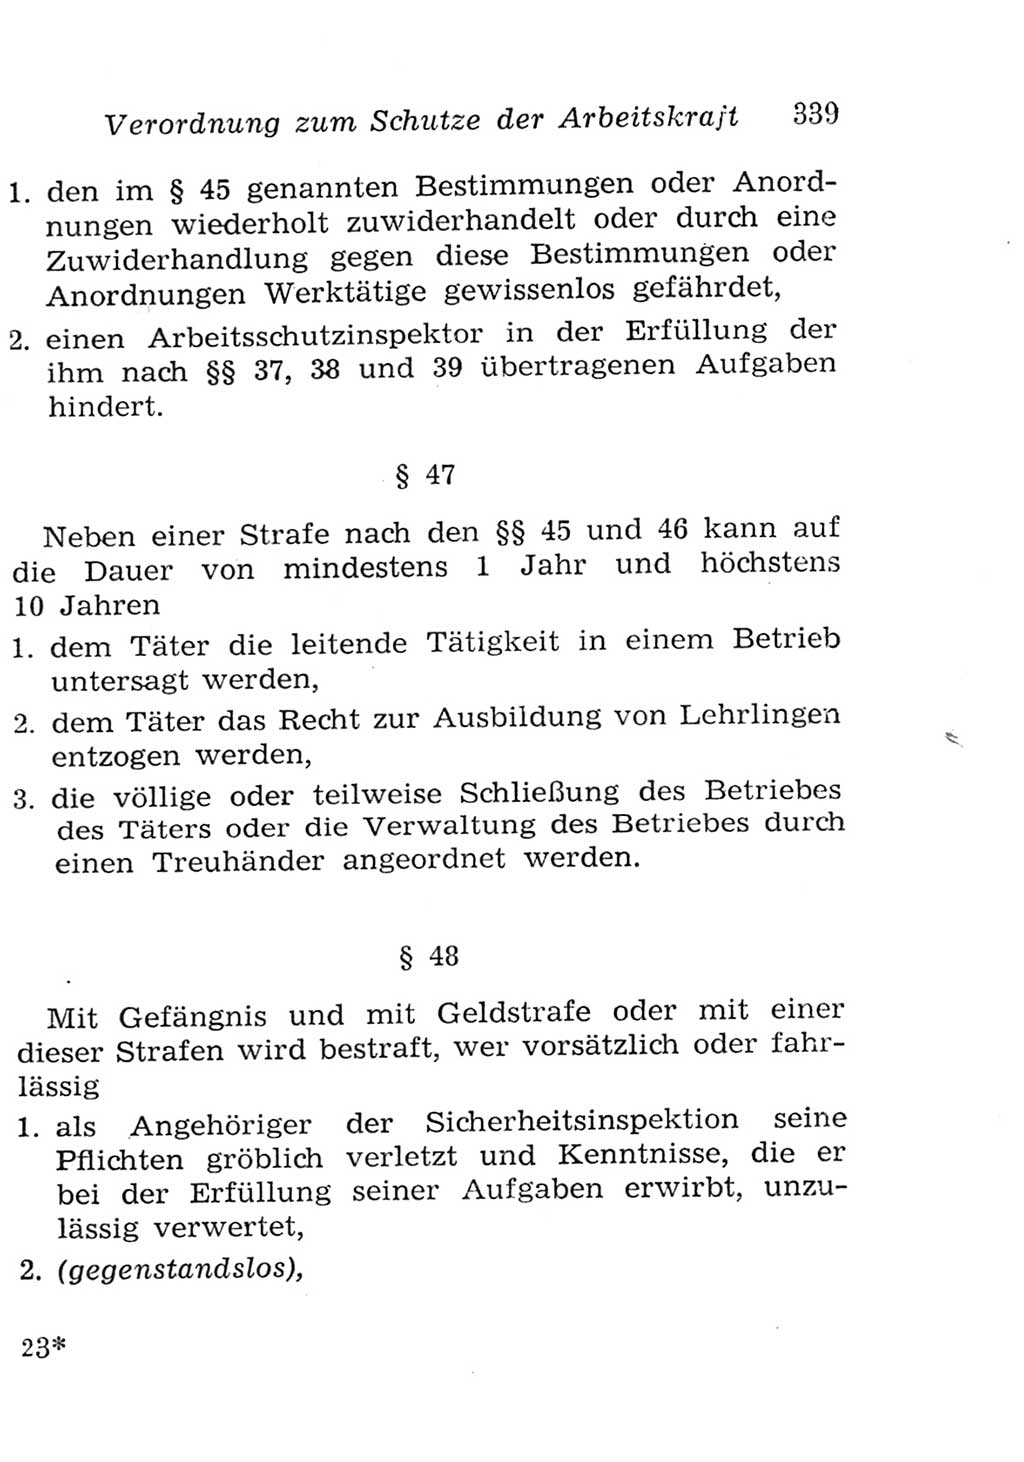 Strafgesetzbuch (StGB) und andere Strafgesetze [Deutsche Demokratische Republik (DDR)] 1957, Seite 339 (StGB Strafges. DDR 1957, S. 339)